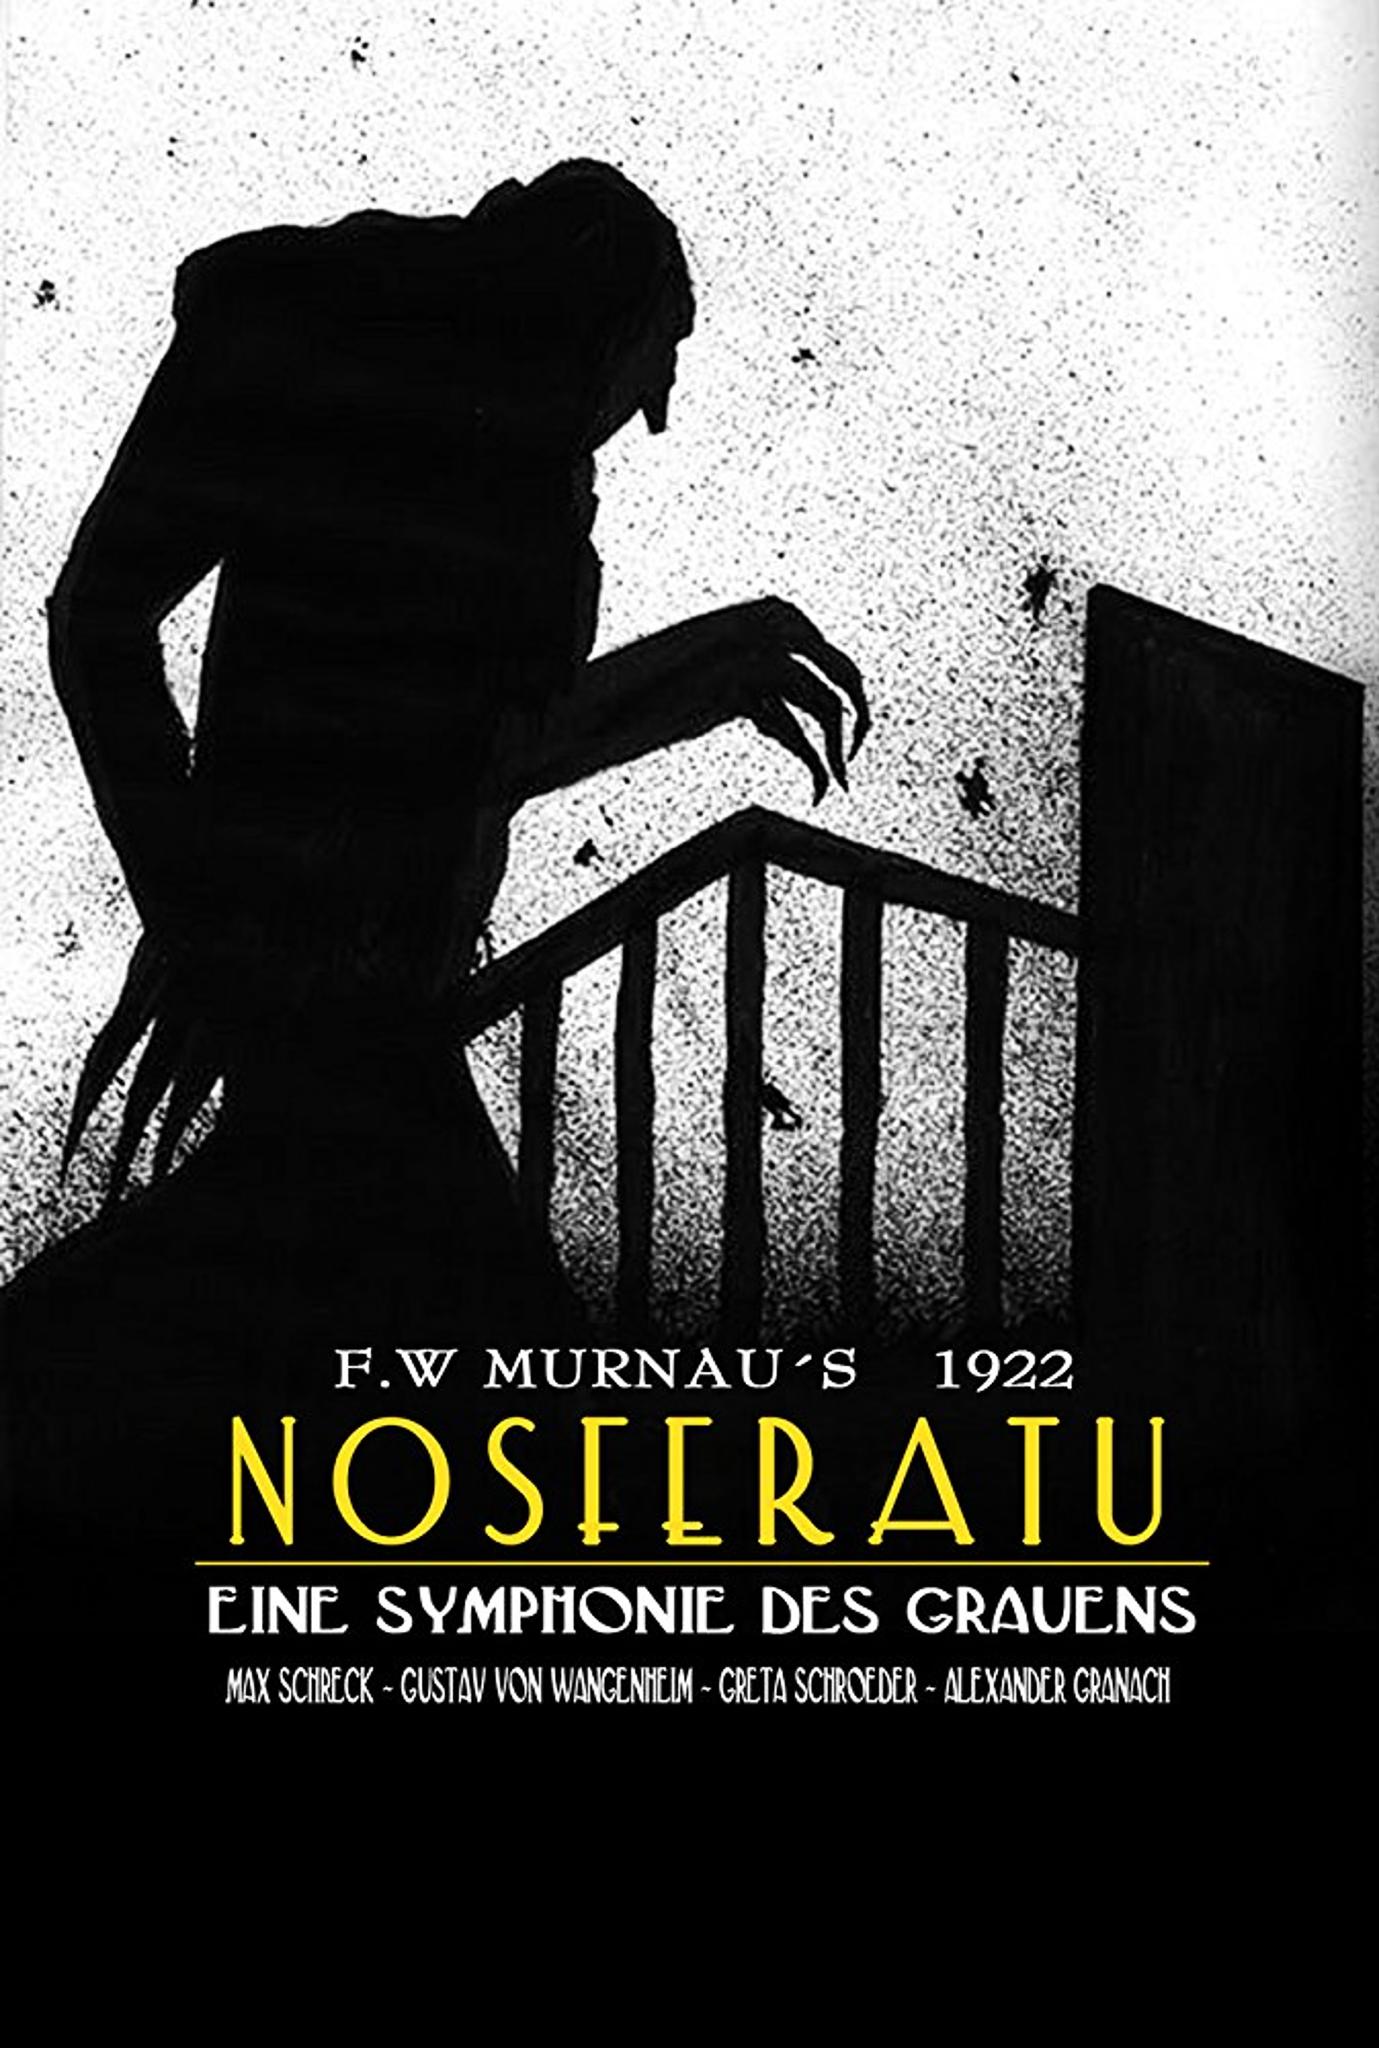 Nosferatu (1922), Film Bisu Pertama Bertema Dracula Karya Bram Stoker (03)